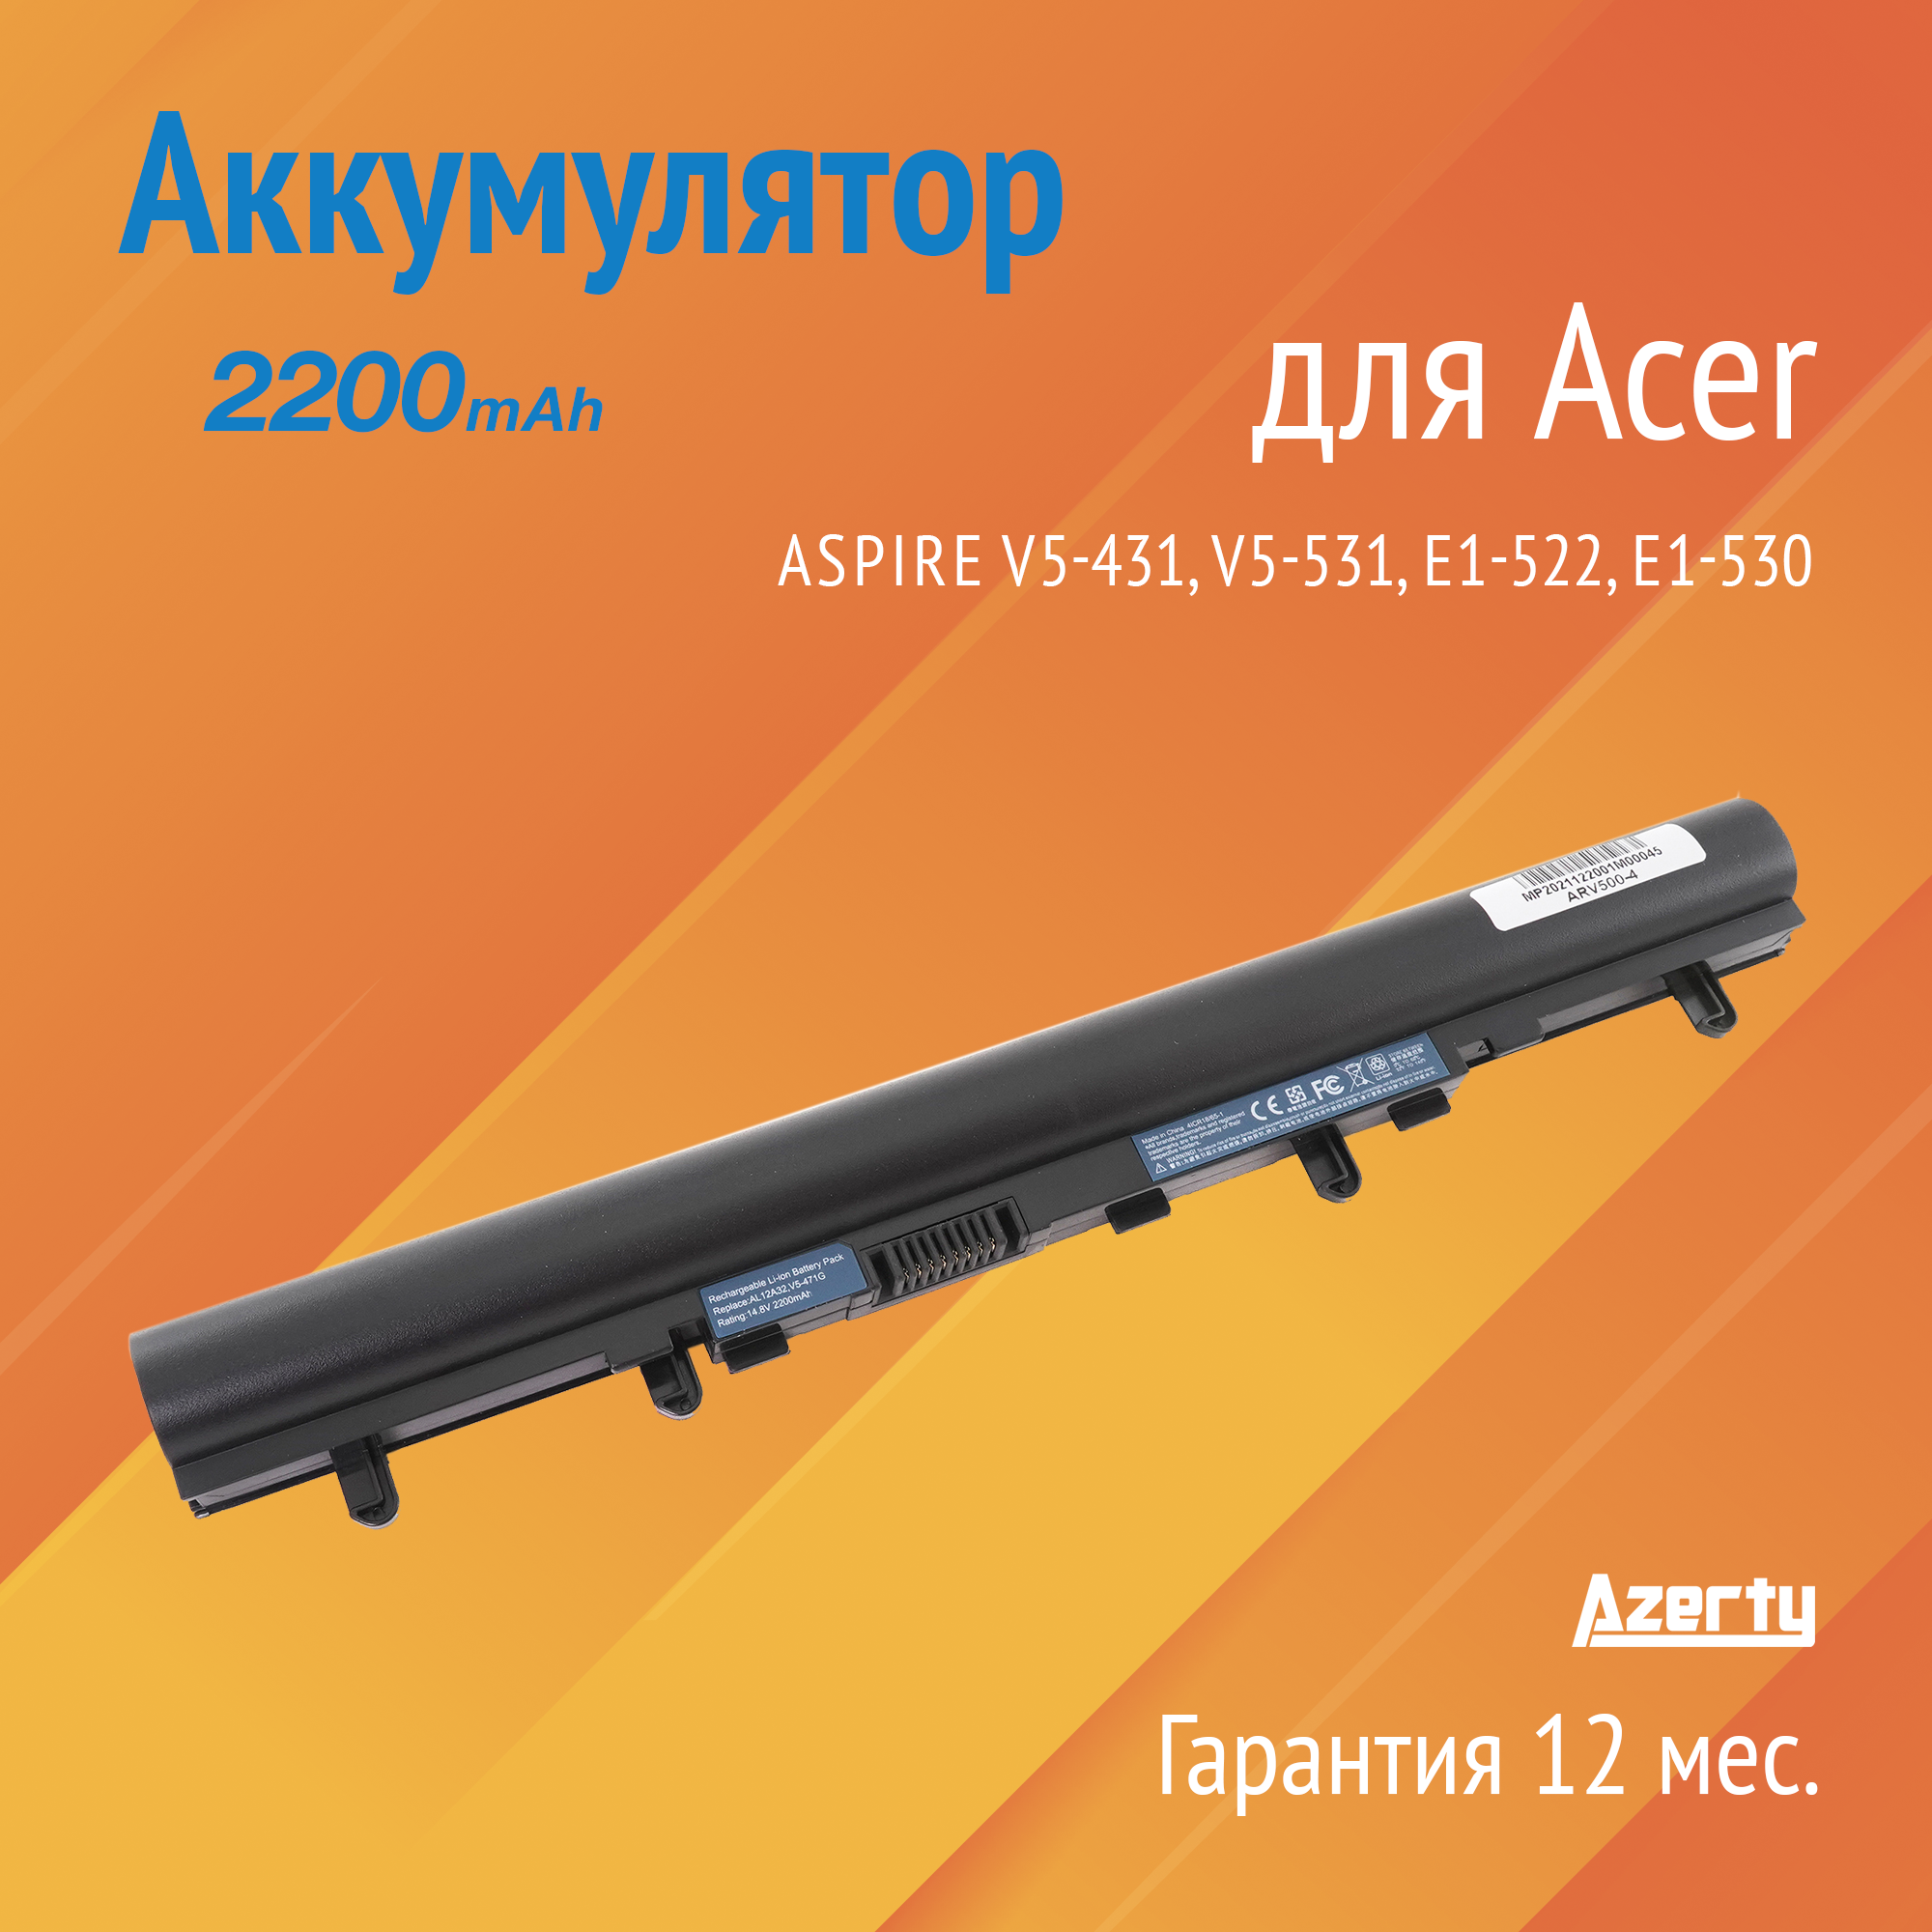 Аккумулятор AL12A32 для Acer Aspire V5-431 / V5-531 / E1-522 / E1-530 / E1-570 (AL12A72, 4ICR17/65, AL12A31) 2200mAh